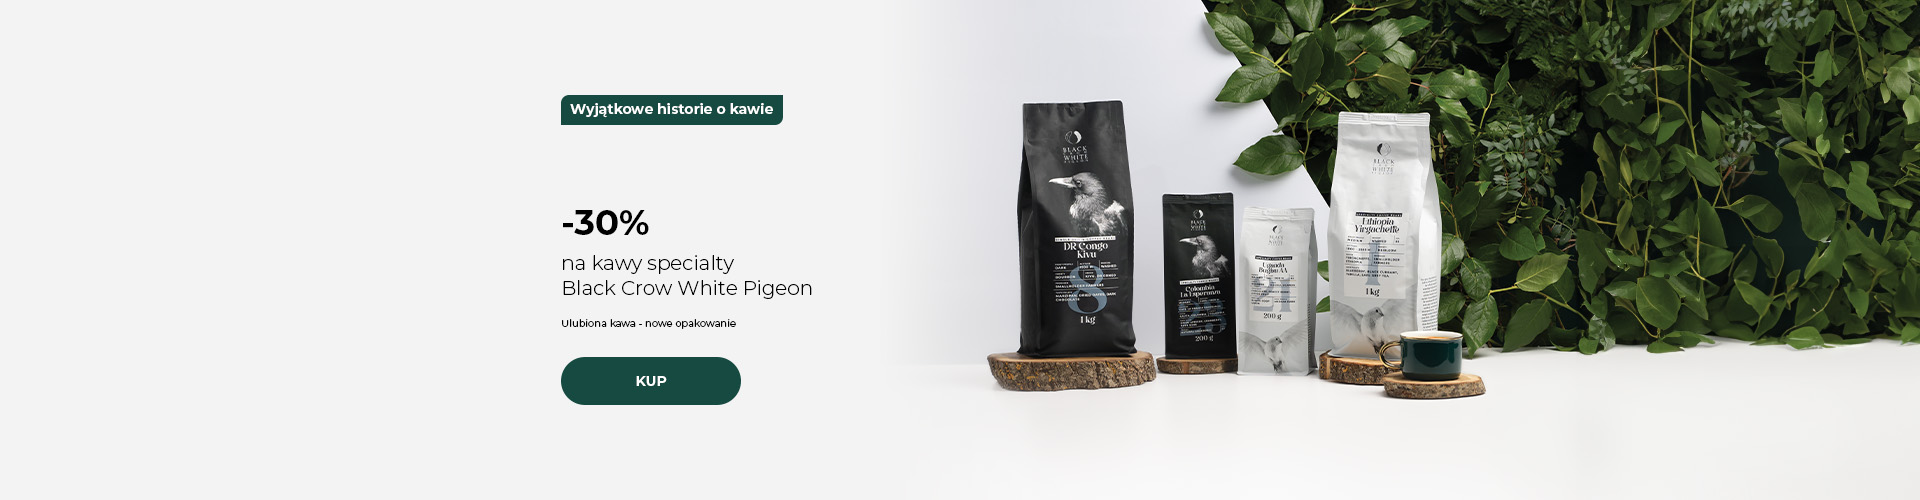 -30% na kawy specialty Black Crow White Pigeon